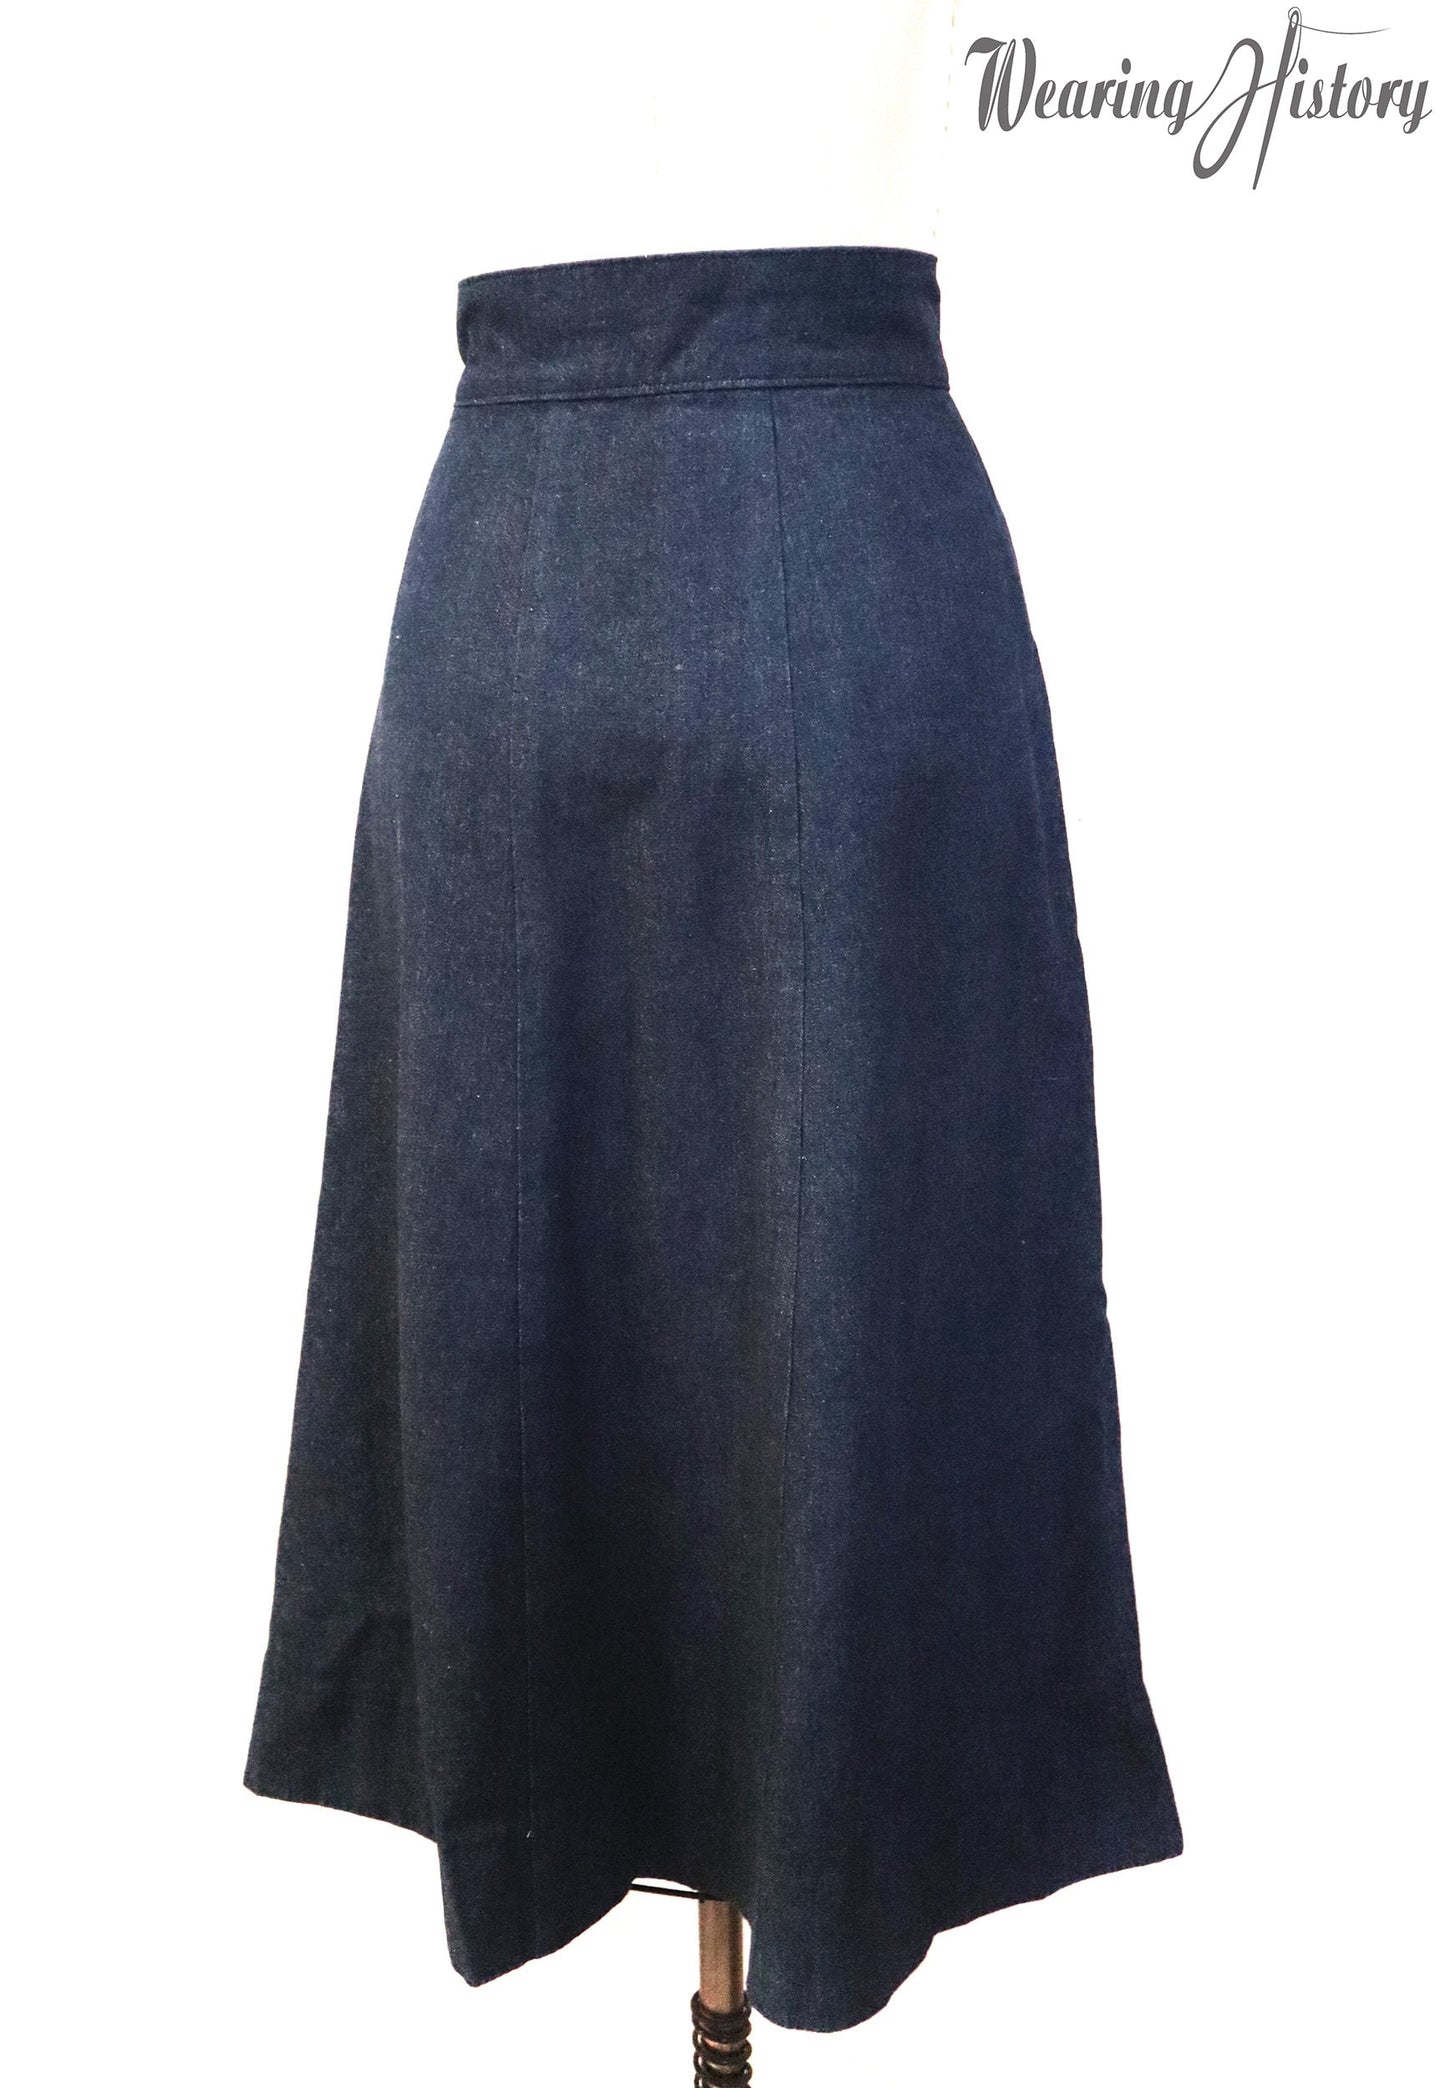 PRINTED PATTERN- 1940s "Rebecca" Skirt Pattern- Sizes 26-36" Waist